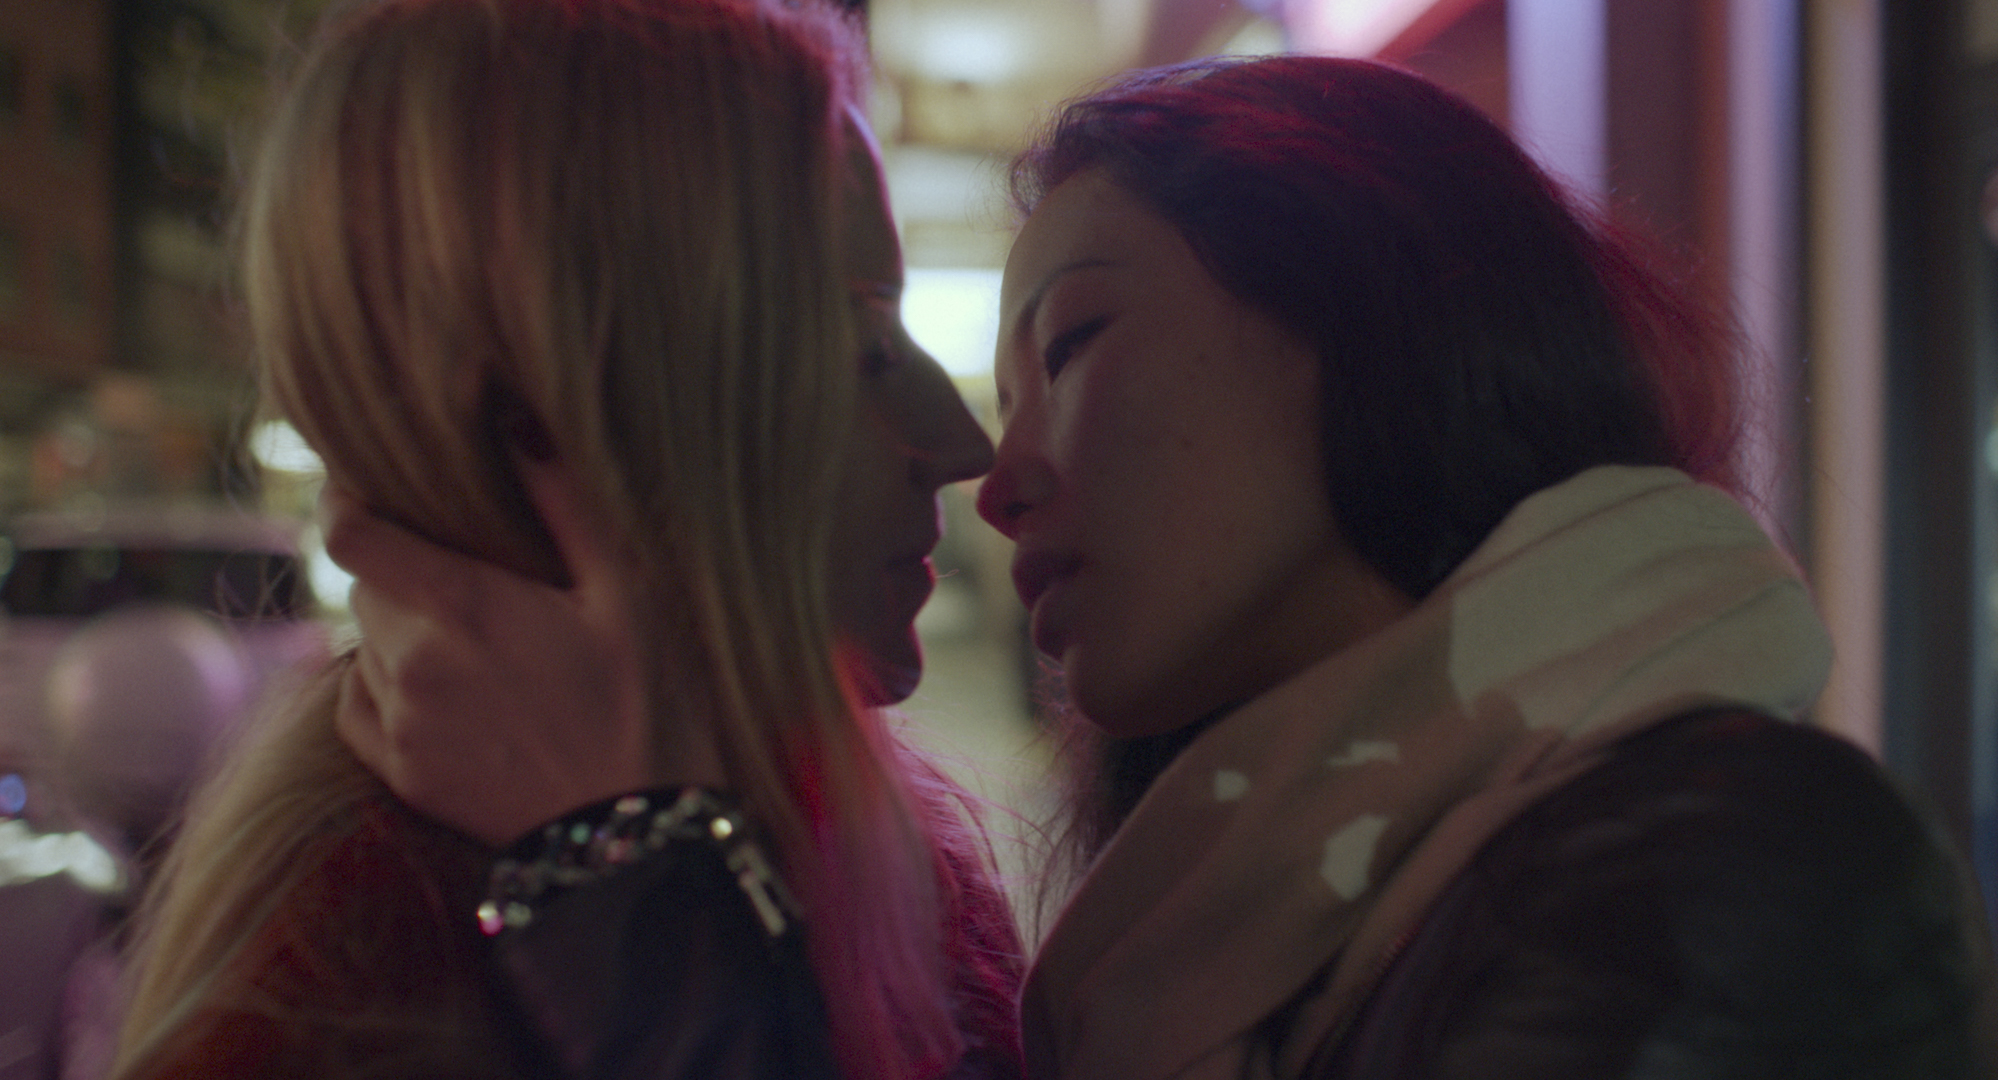 "Don't Look at Me That Way" screens at the Hong Kong Lesbian and Gay Film Festival